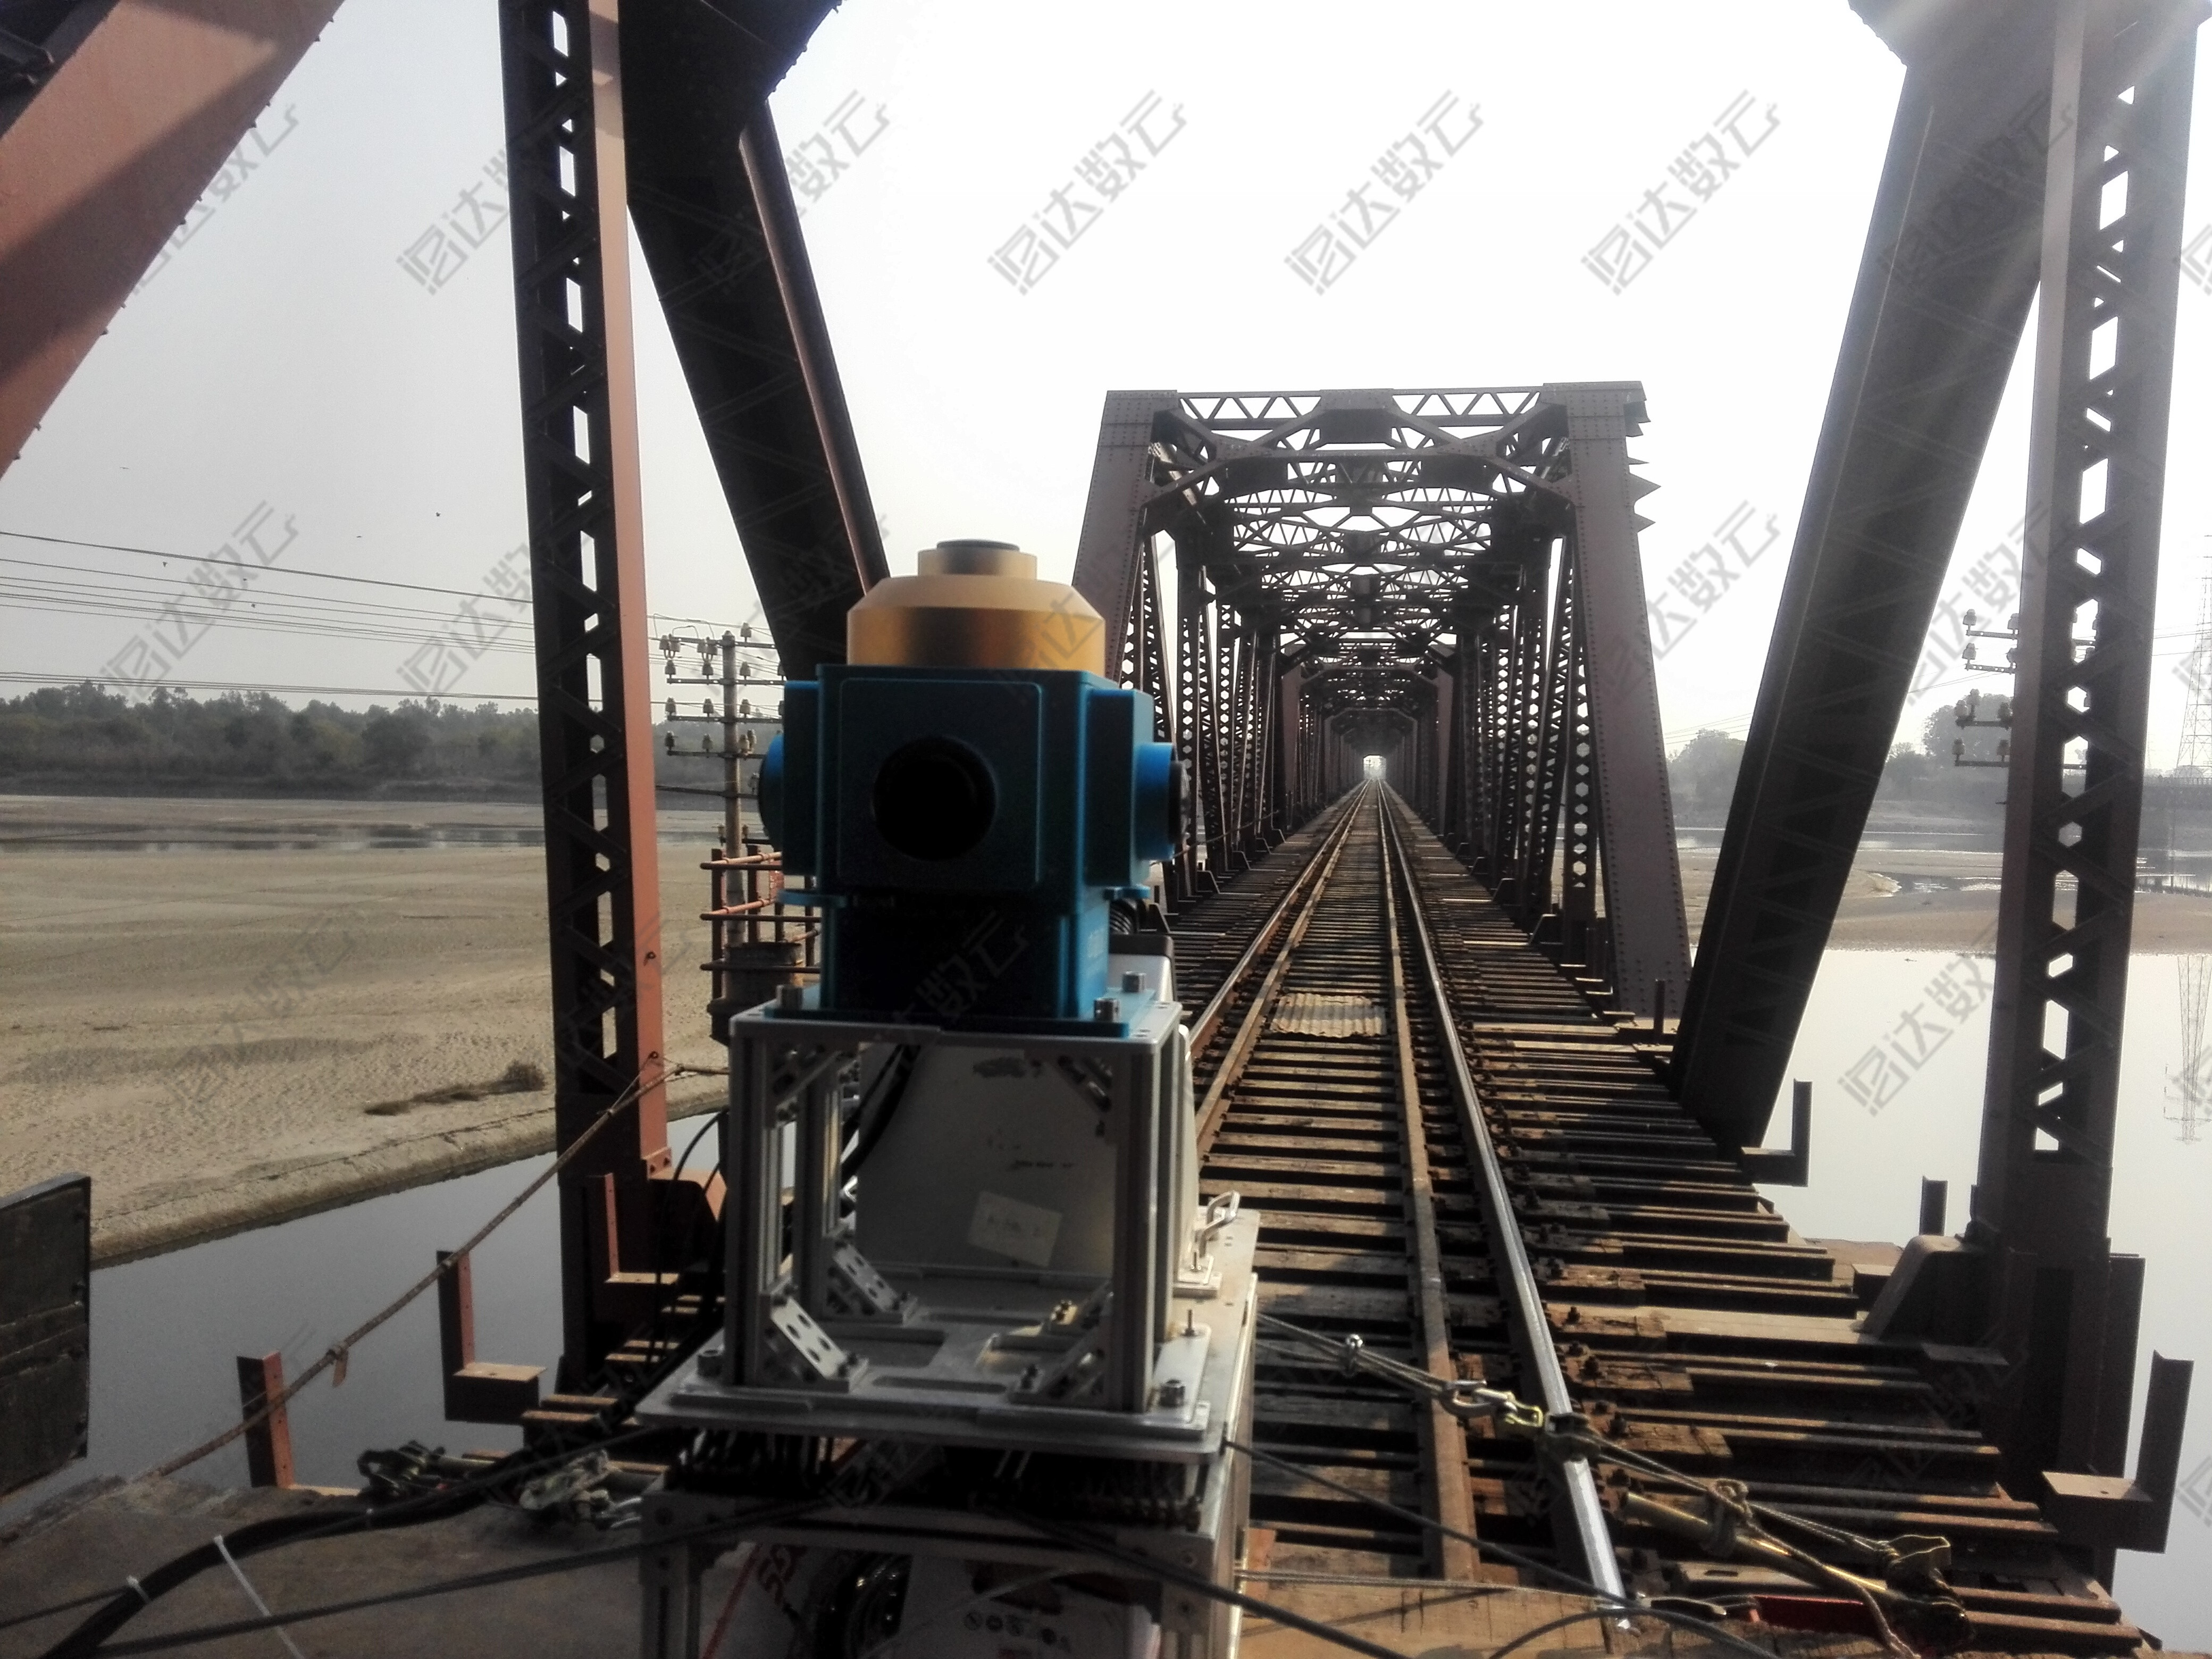  三維激光移動測量系統在海外鐵路建設方面的應用